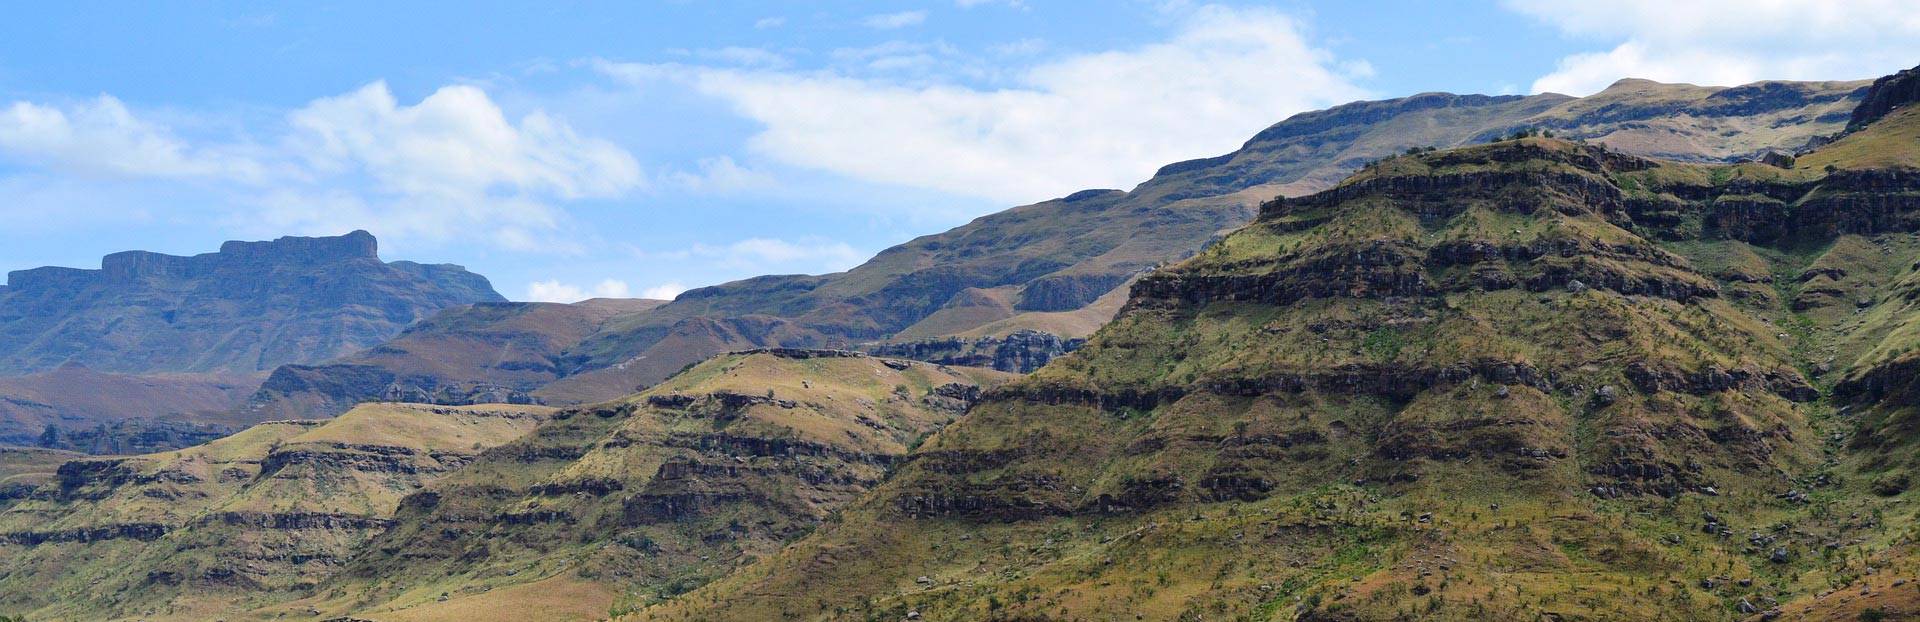 Lesotho Bans Passenger Flights - Airlink Suspends Johannesburg-Maseru Service